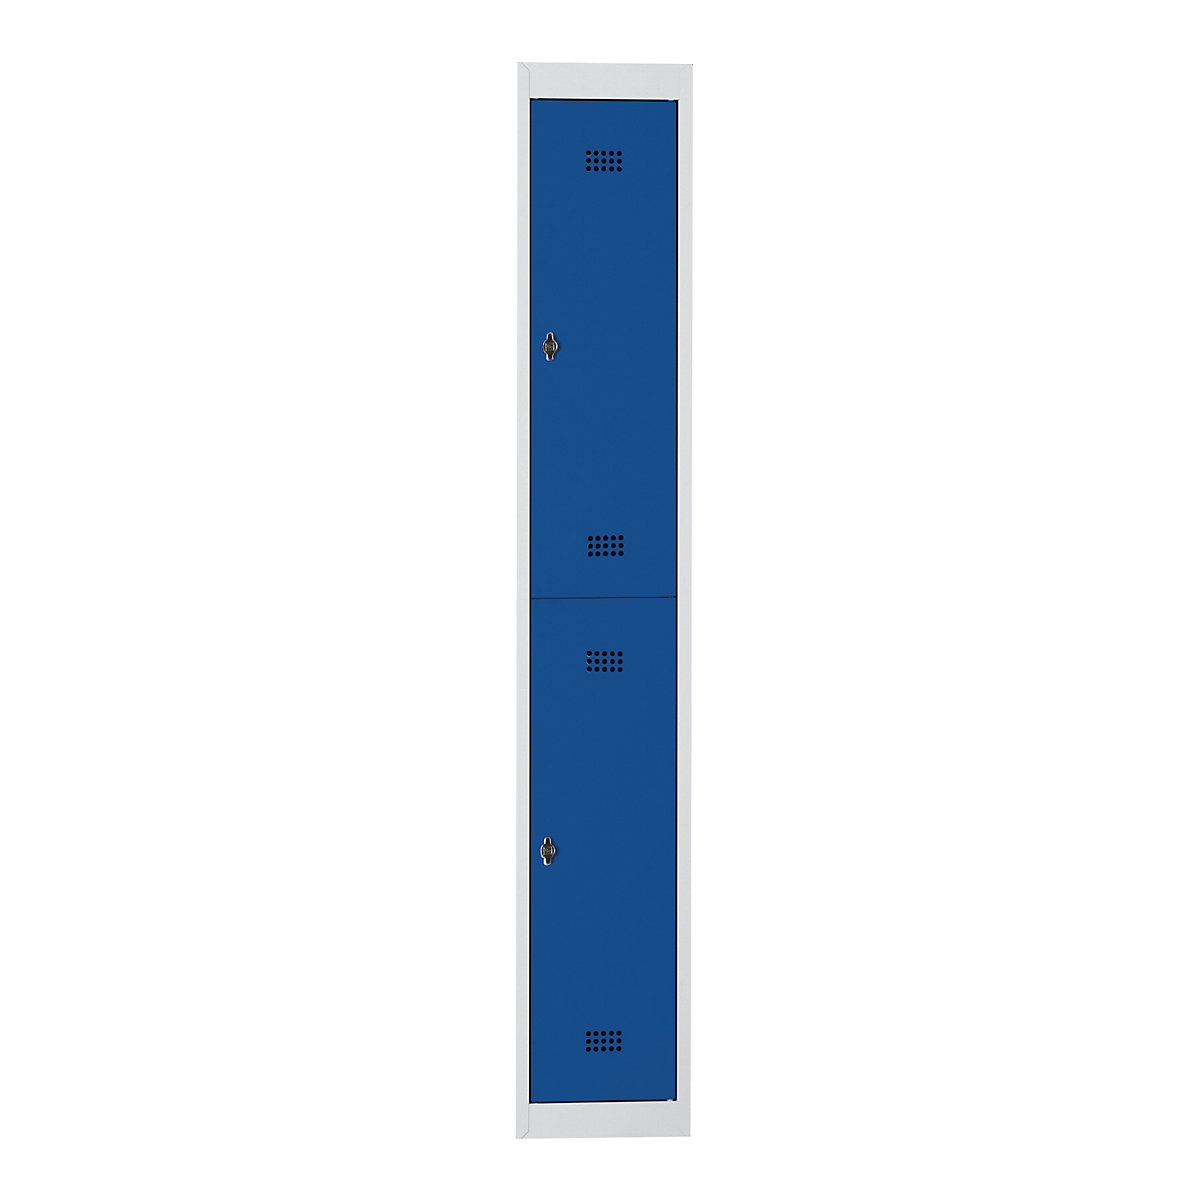 Ocelová skříňka – Wolf, s vypalovaným nátěrem, 2 oddíly, výška 840 mm, šířka 300 mm, 1 tyč na oděvy, přístavný prvek, světlá šedá / enciánová modrá